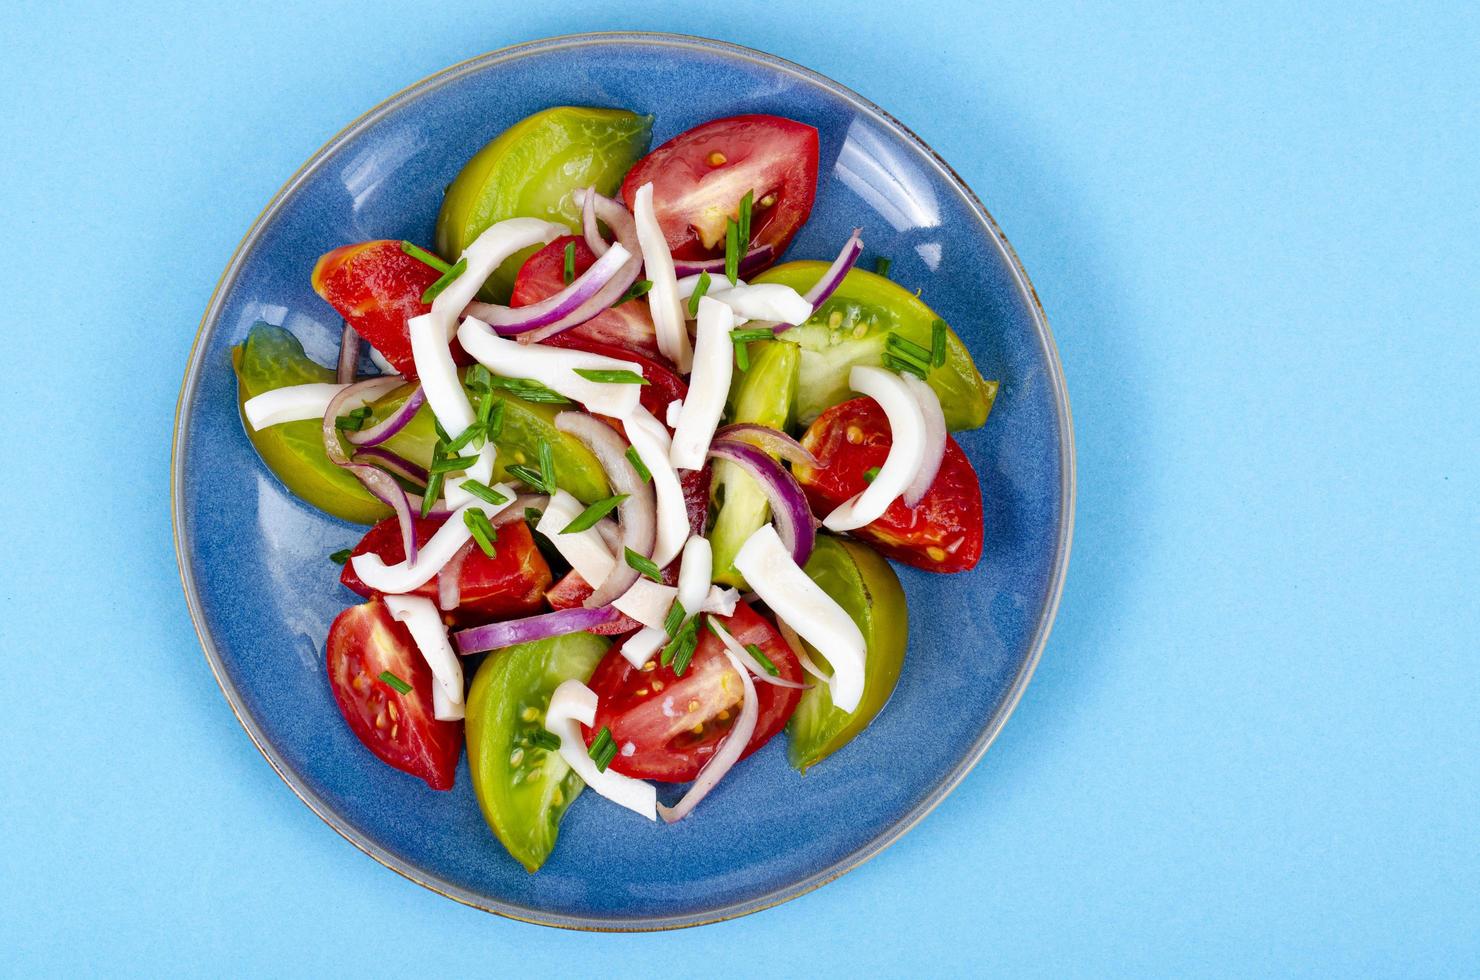 salade de légumes sains avec tomates et morceaux de calamars. photo d'atelier.